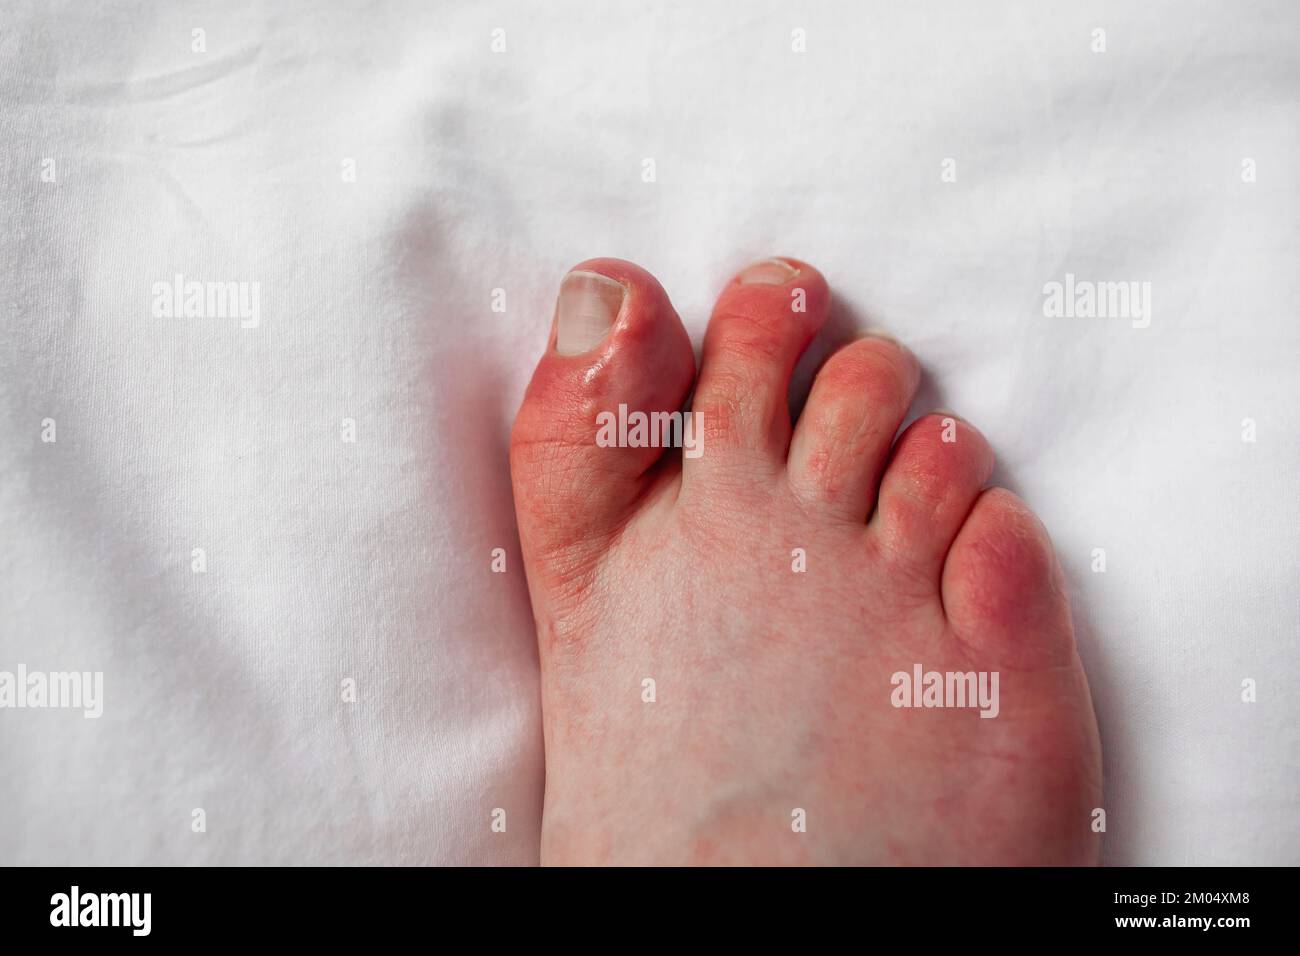 Bambini sulle dita dei piedi, rossore pruriginoso, gonfiore del piede della persona con fenomeno di Raynaud e lesioni dei bambini dermatite pernio sulle dita Perniosi Foto Stock